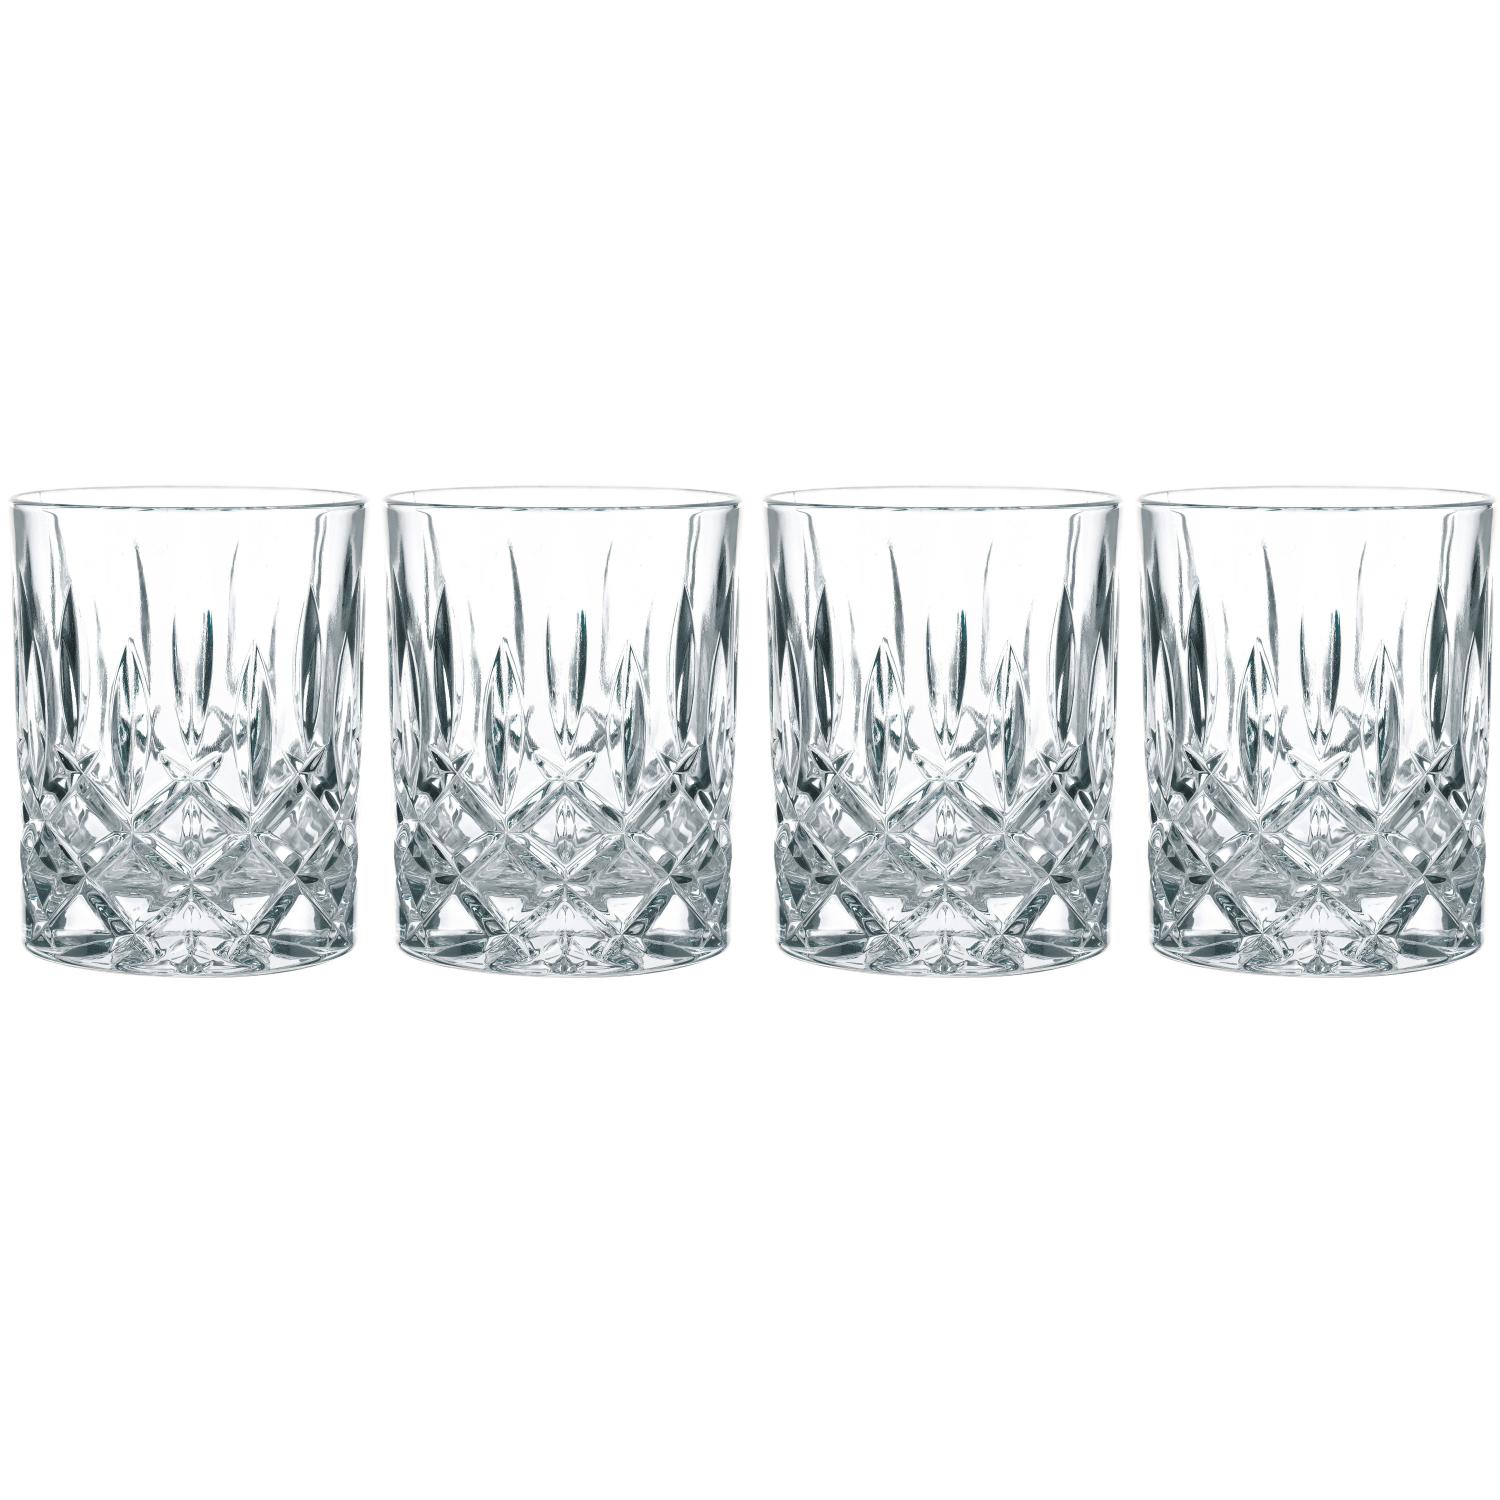 4 стакана для виски Nachtmann Noblesse Whisky Tumbler 295 мл (арт. 89207)